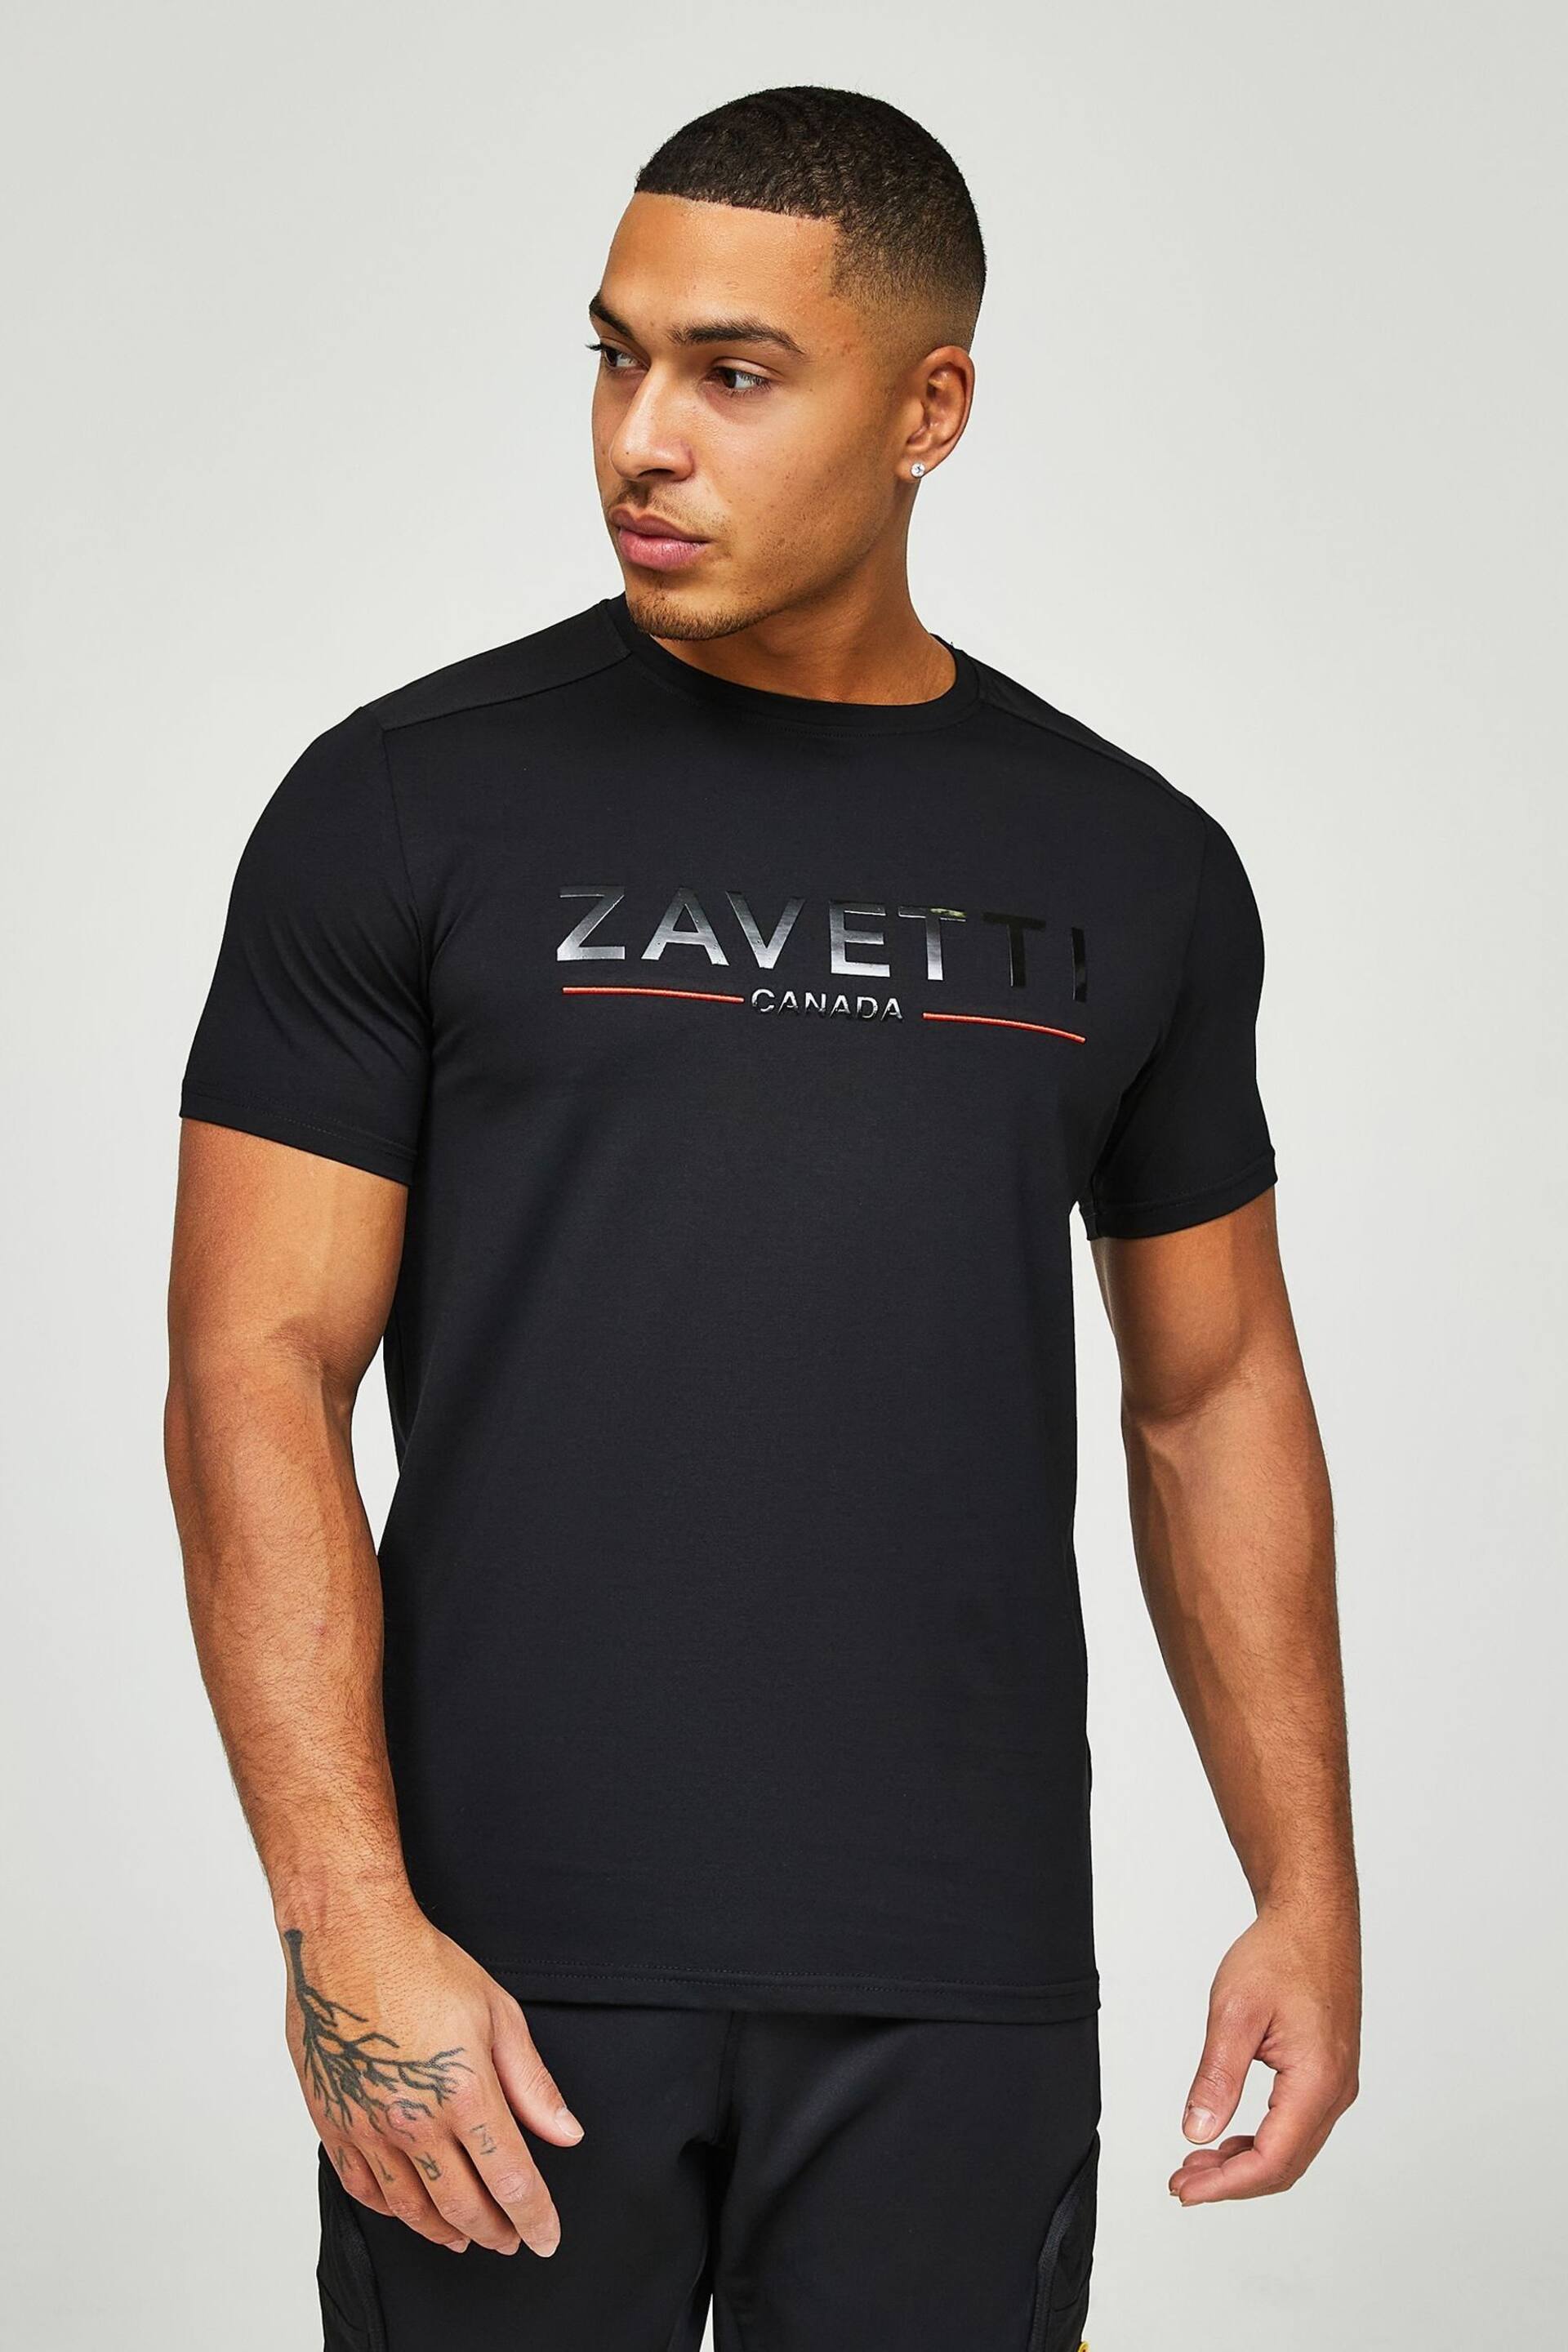 Zavetti Canada Daletto Black T-Shirt - Image 4 of 6